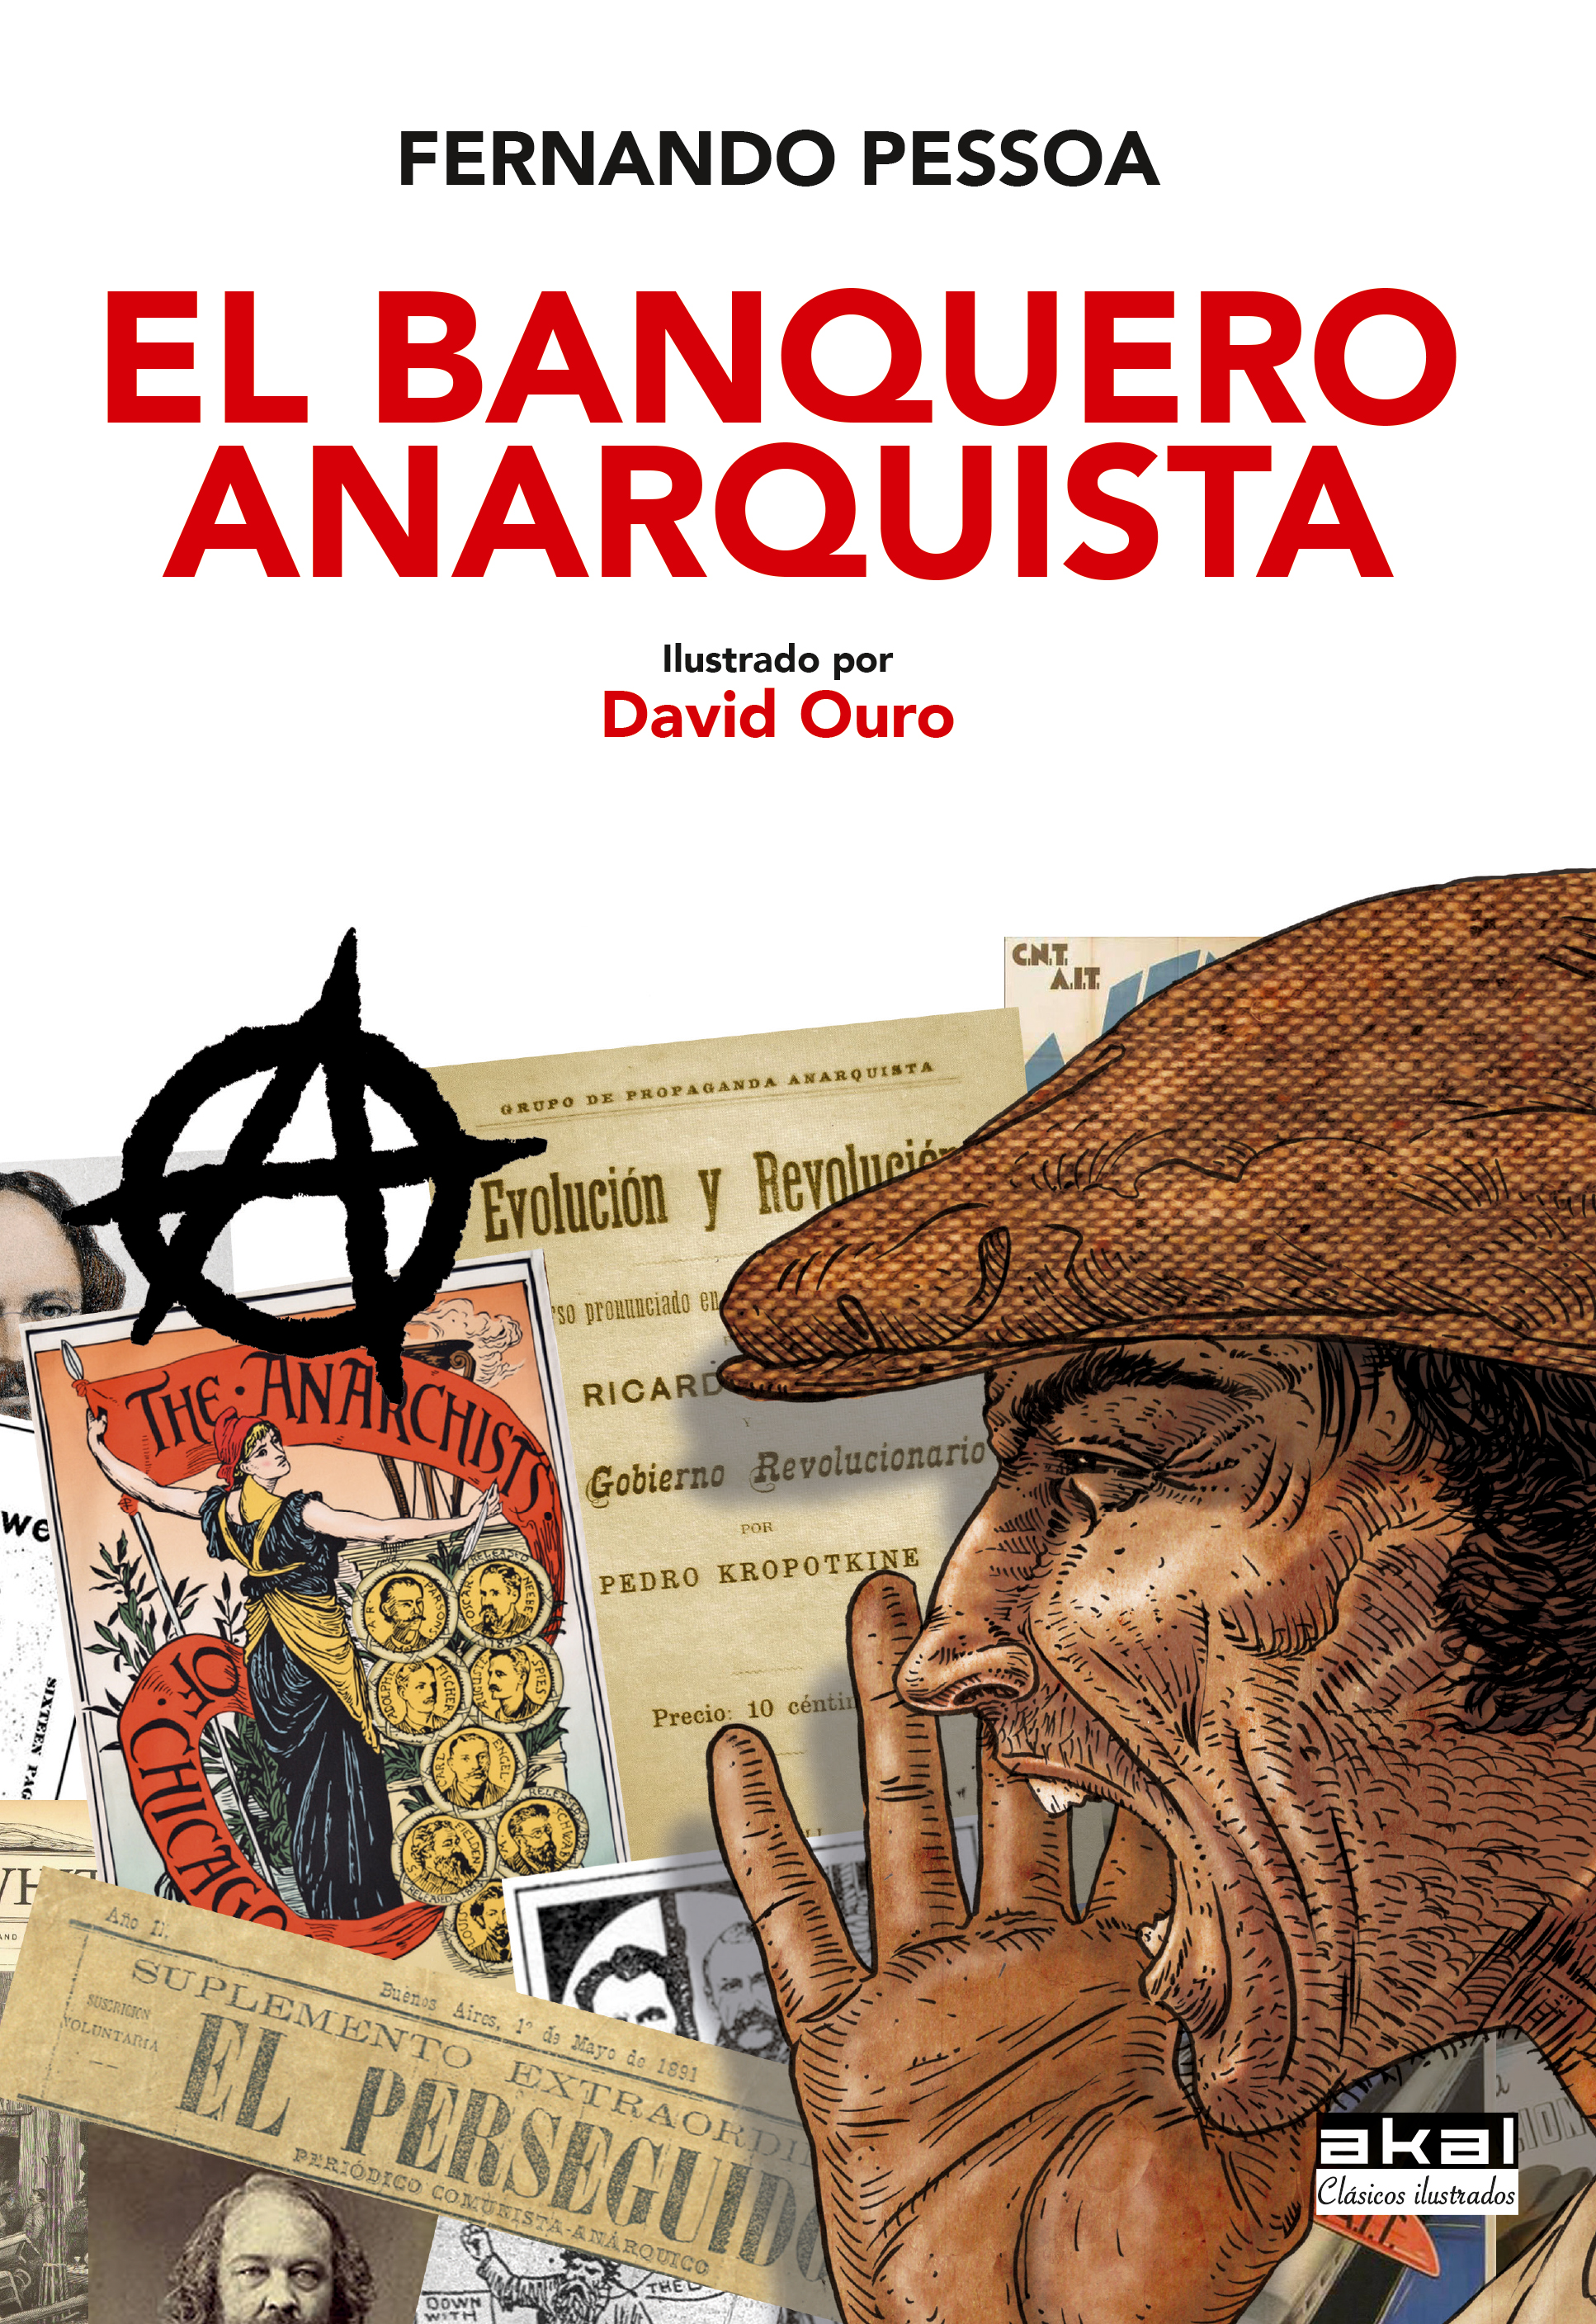 EL BANQUERO ANARQUISTA - Fernando Pessoa